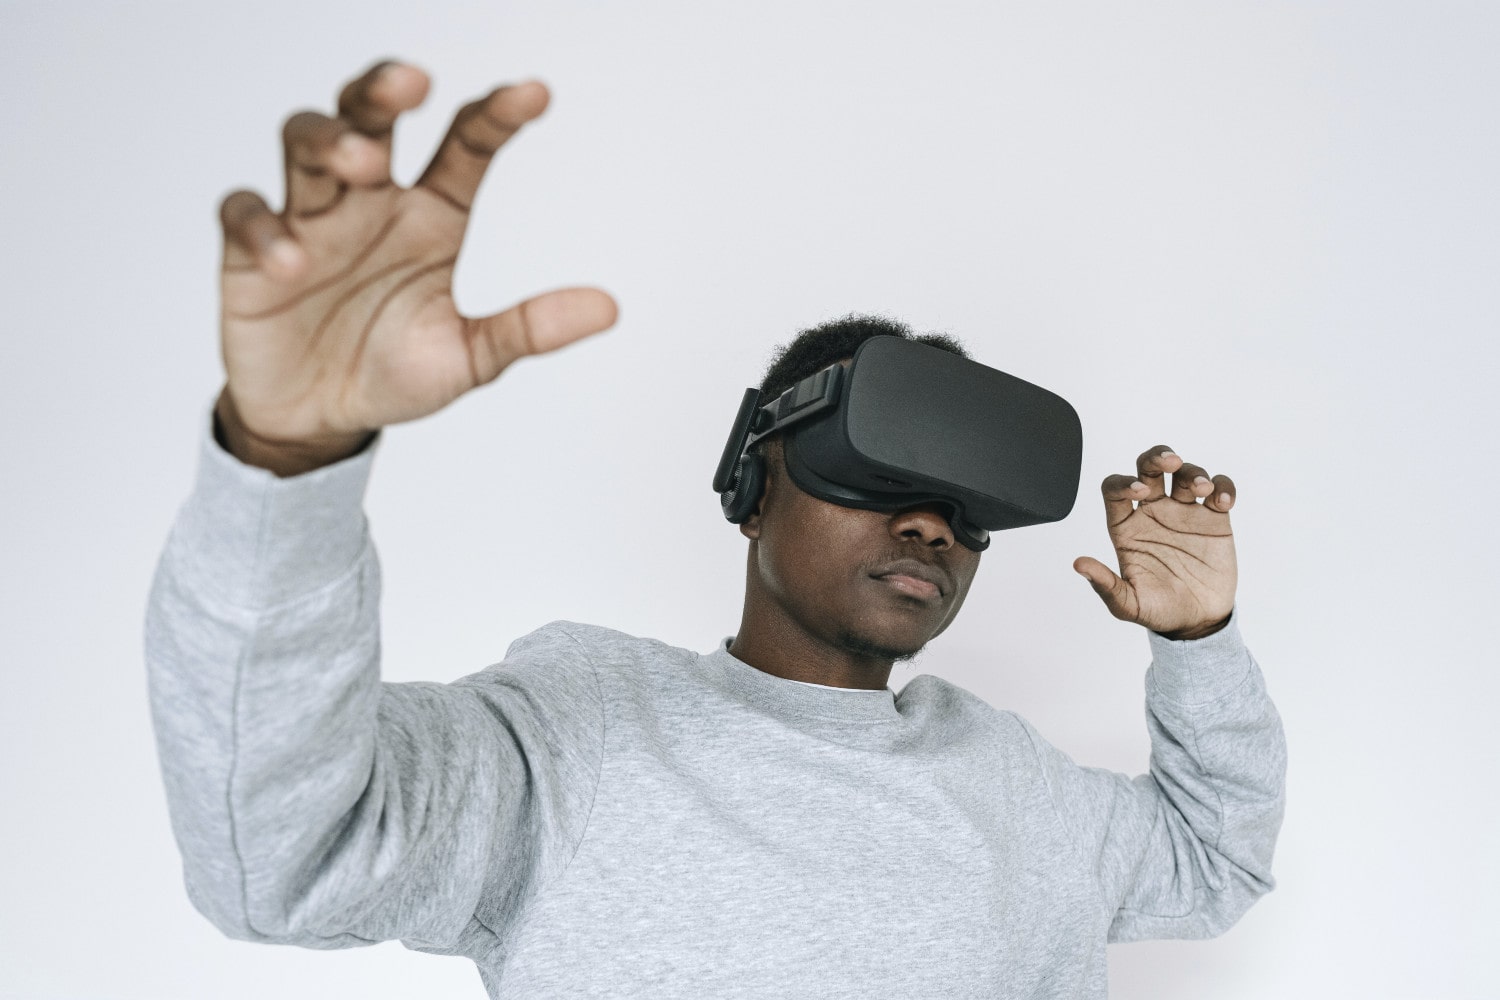 Uma pessoa usando um fone de ouvido de realidade virtual contra um fundo branco.